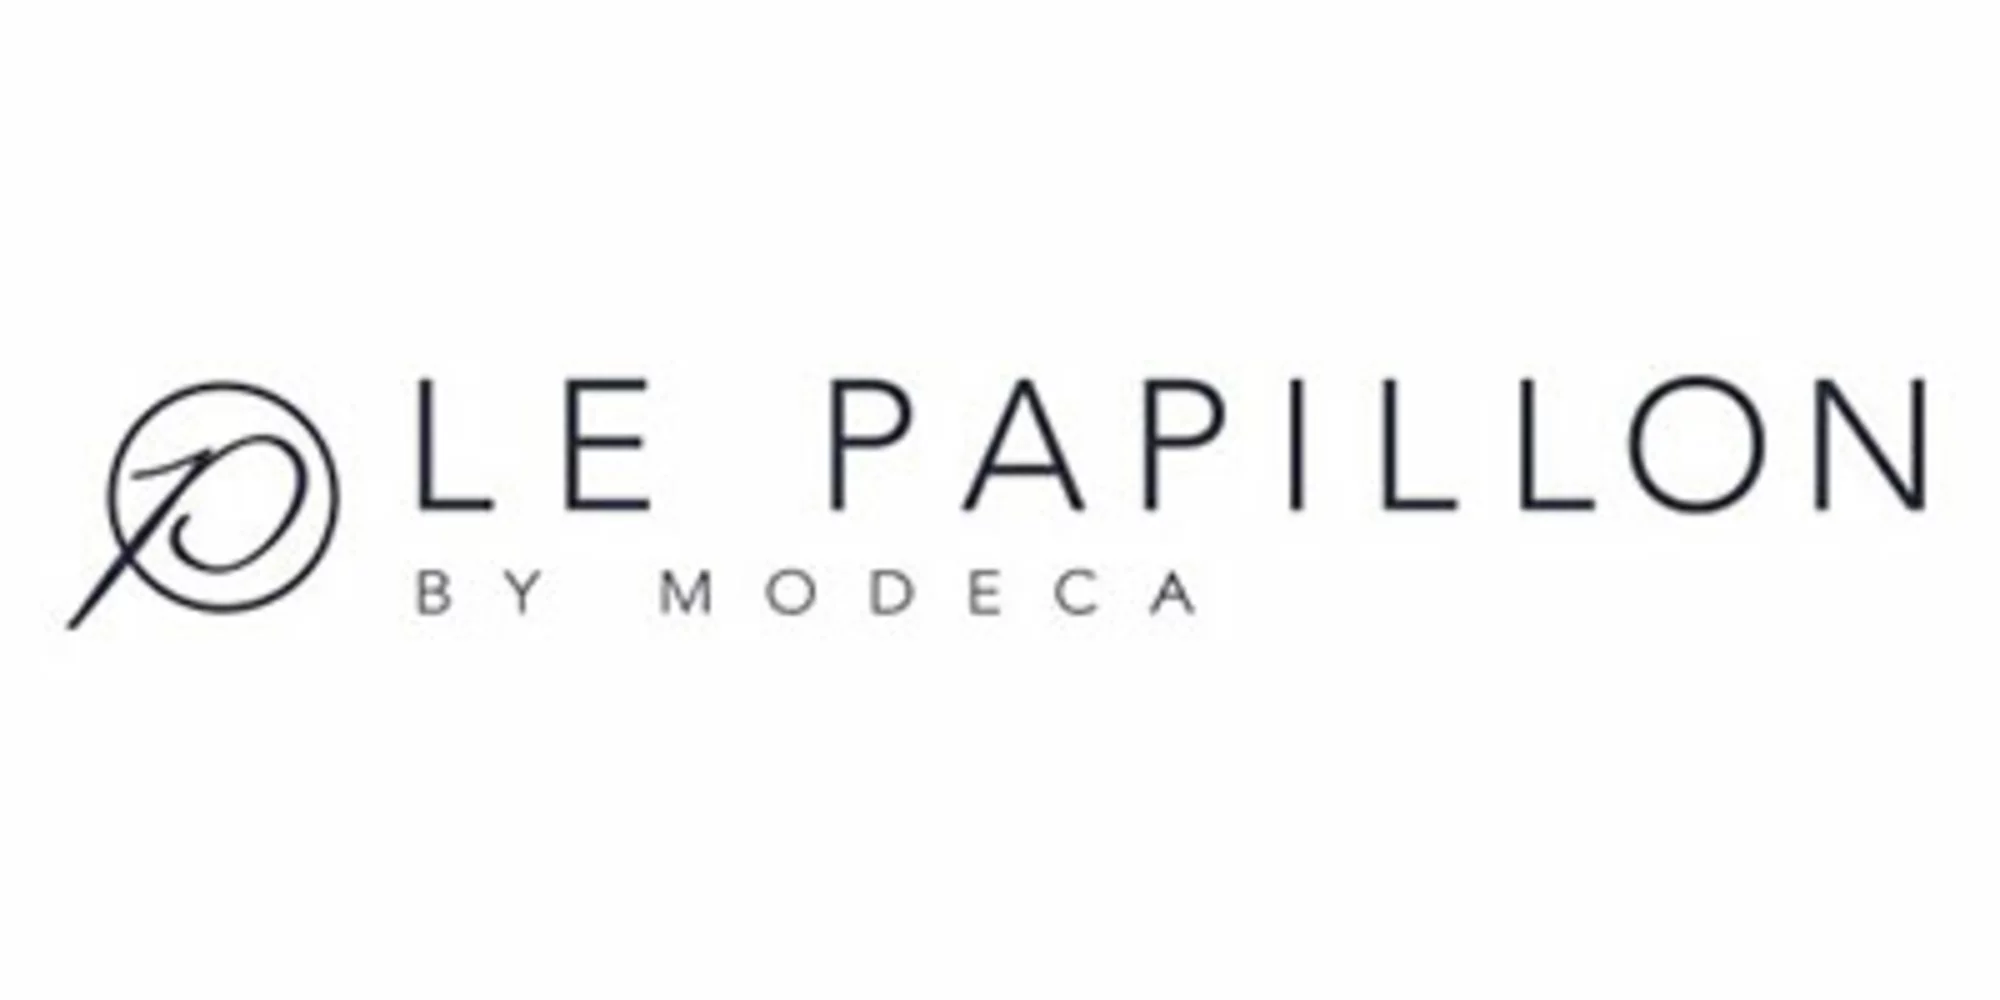 Logo Le Papillon